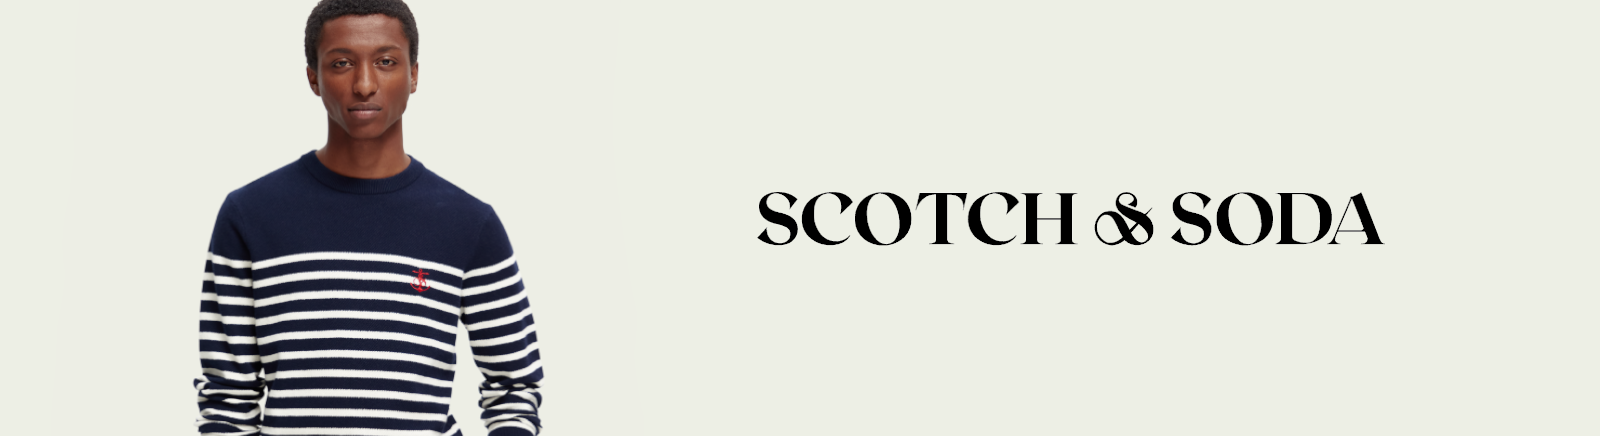 Scotch & Soda Winterschuhe für Schuhe im Online-Shop von GISY kaufen